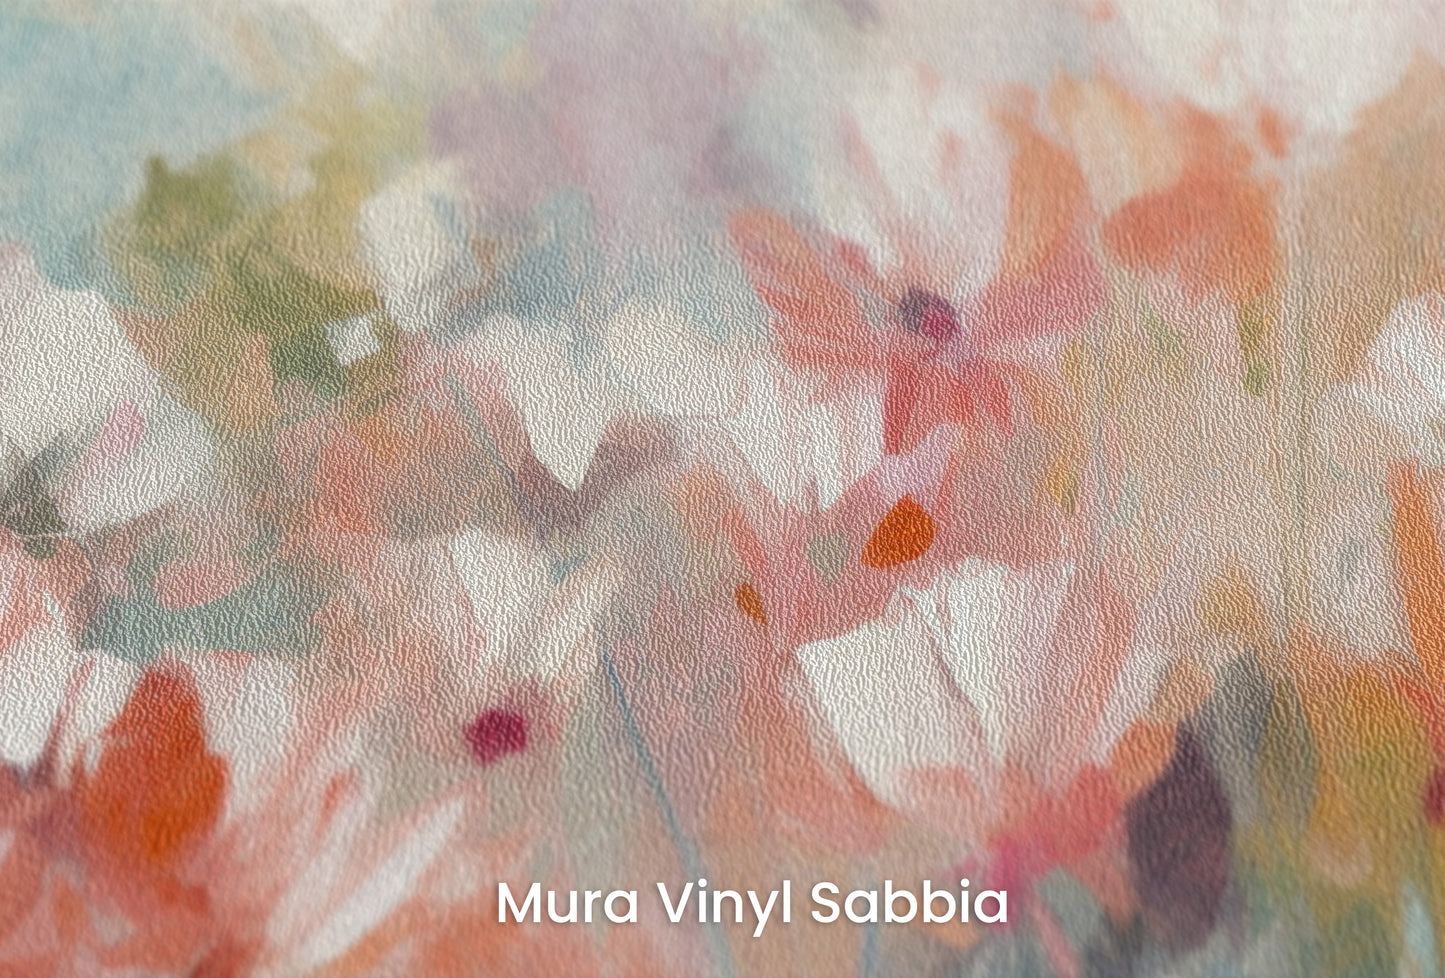 Zbliżenie na artystyczną fototapetę o nazwie Delicate Floral Hues na podłożu Mura Vinyl Sabbia struktura grubego ziarna piasku.